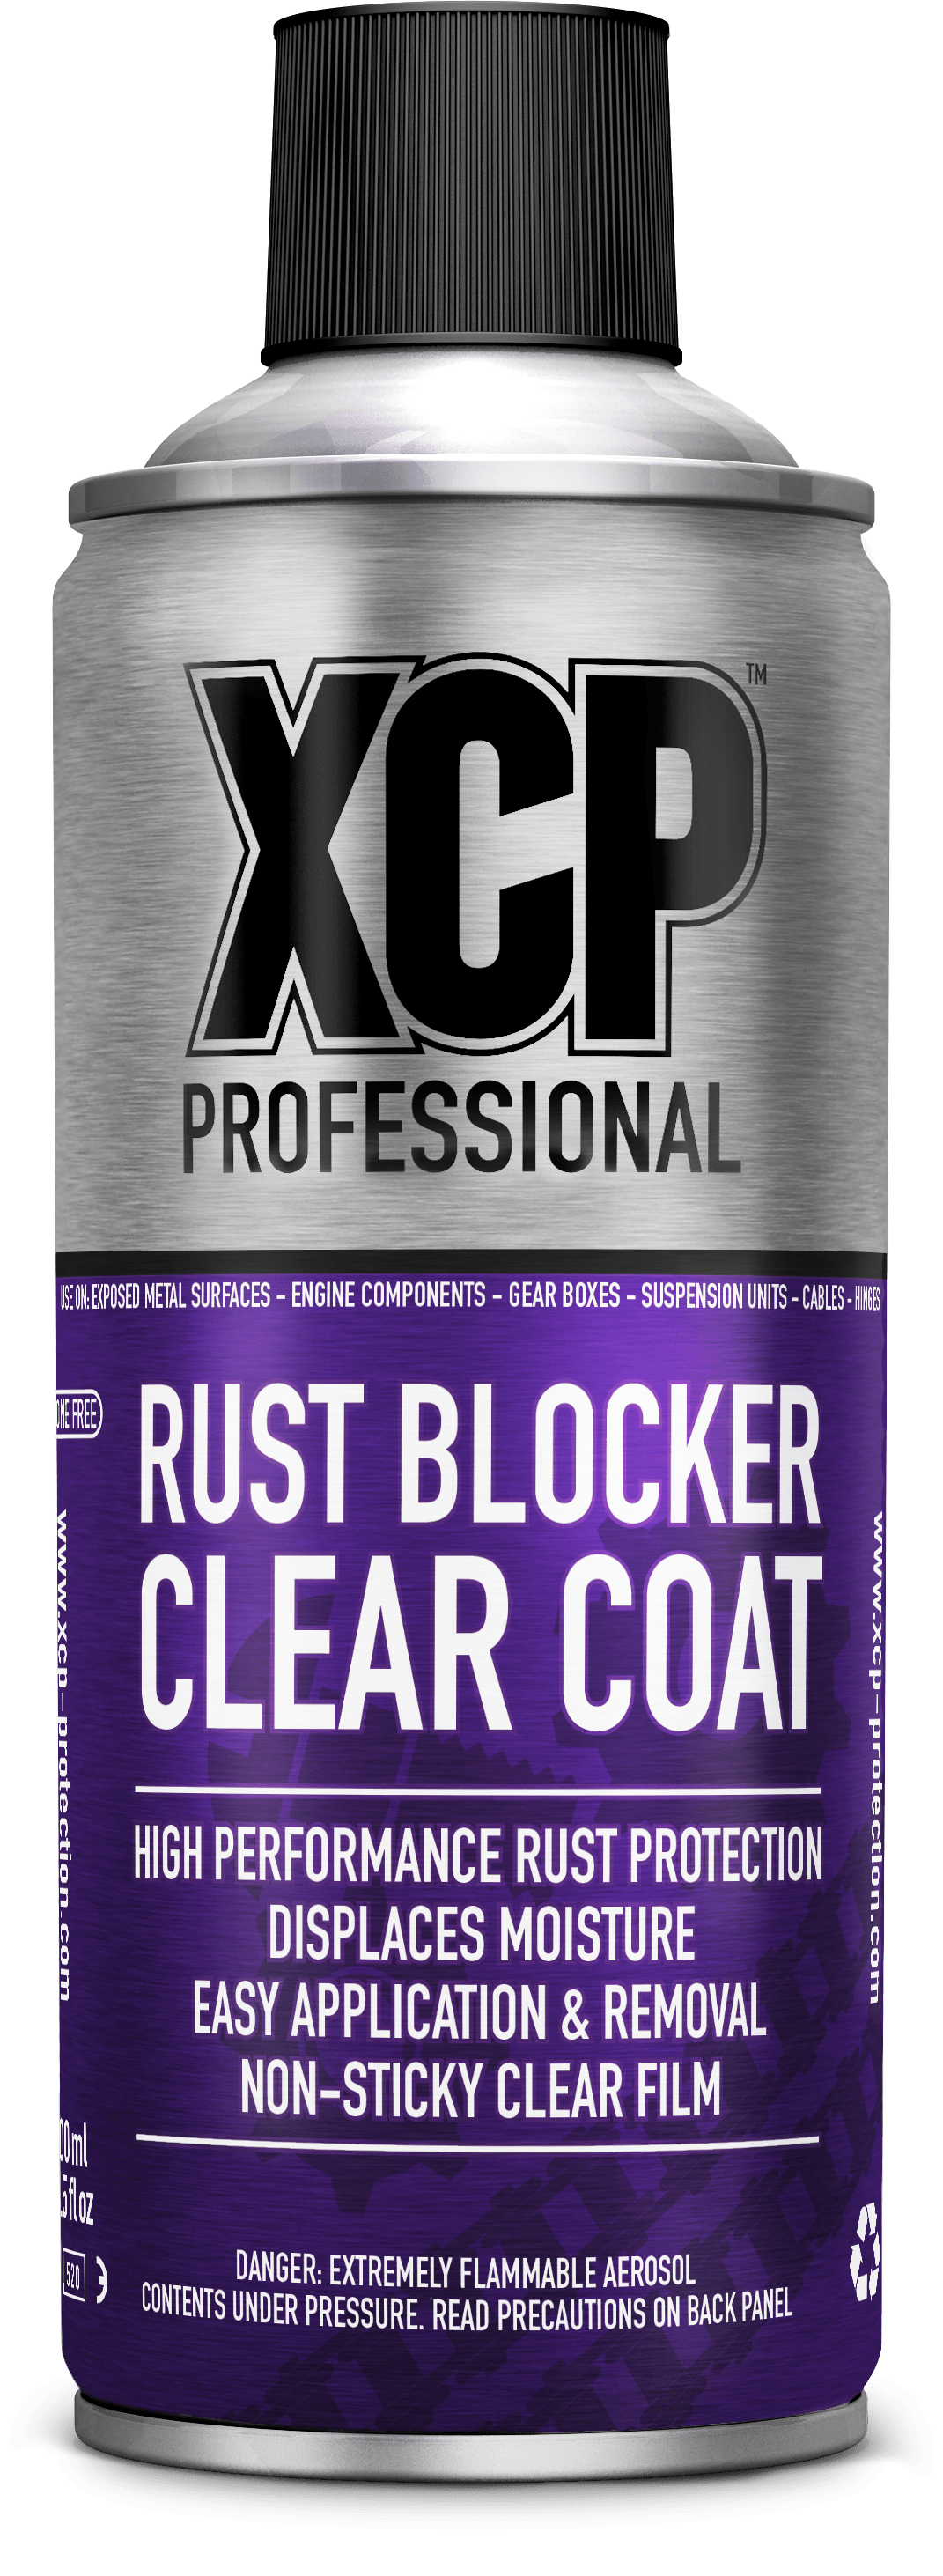 Rust blocker от бренда a1 фото 6